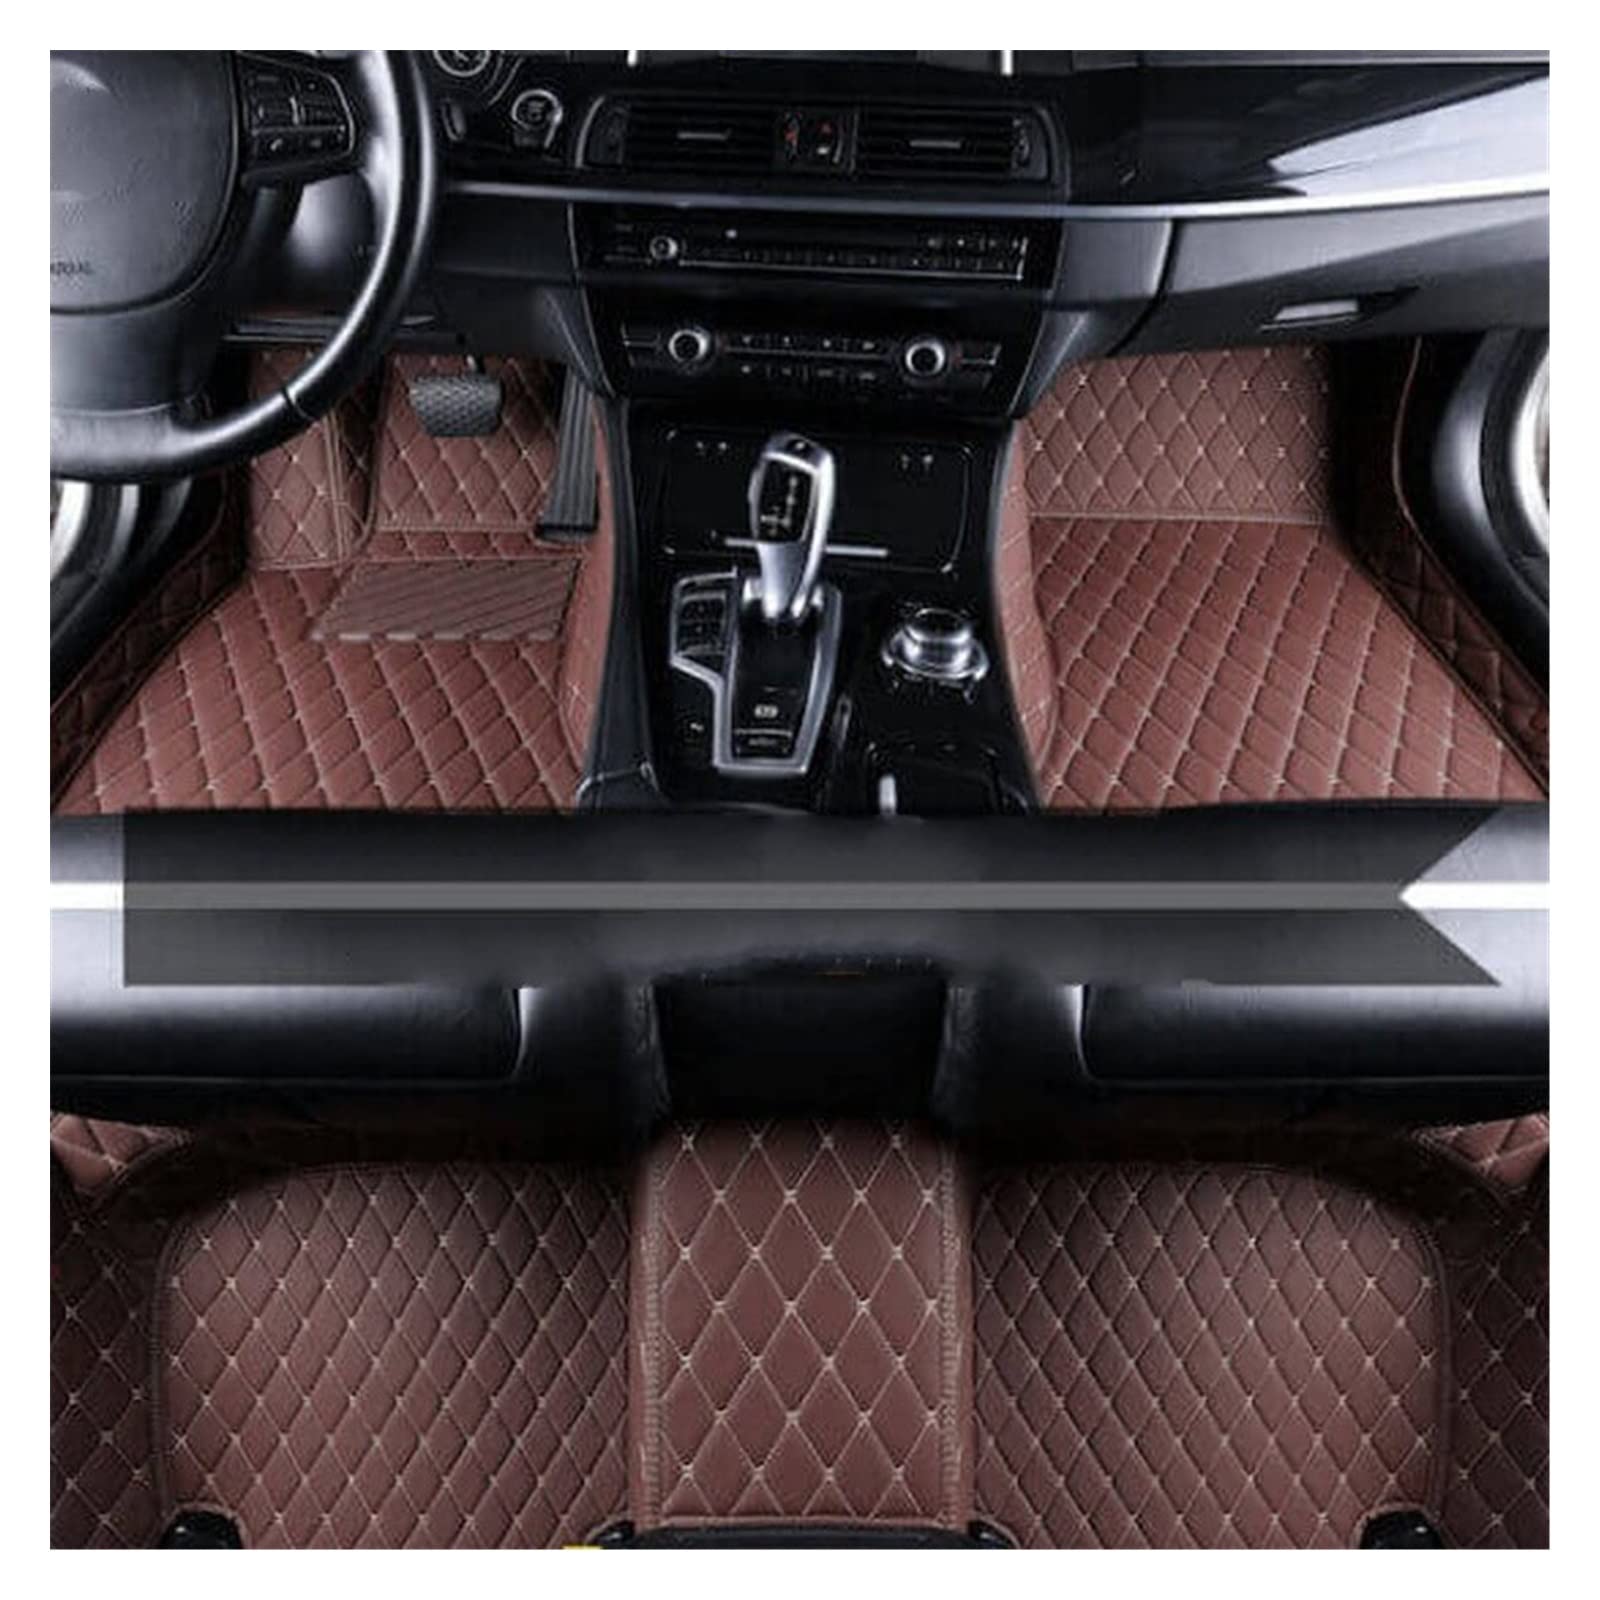 Fußmatten Leder Auto Fußmatten Für Hyundai Für I30 2012 2013 2014 2015 2016 Auto Zubehör Leder Fußmatte Innenraum Autofußmatten(Dunkelbraun) von DKPMWD